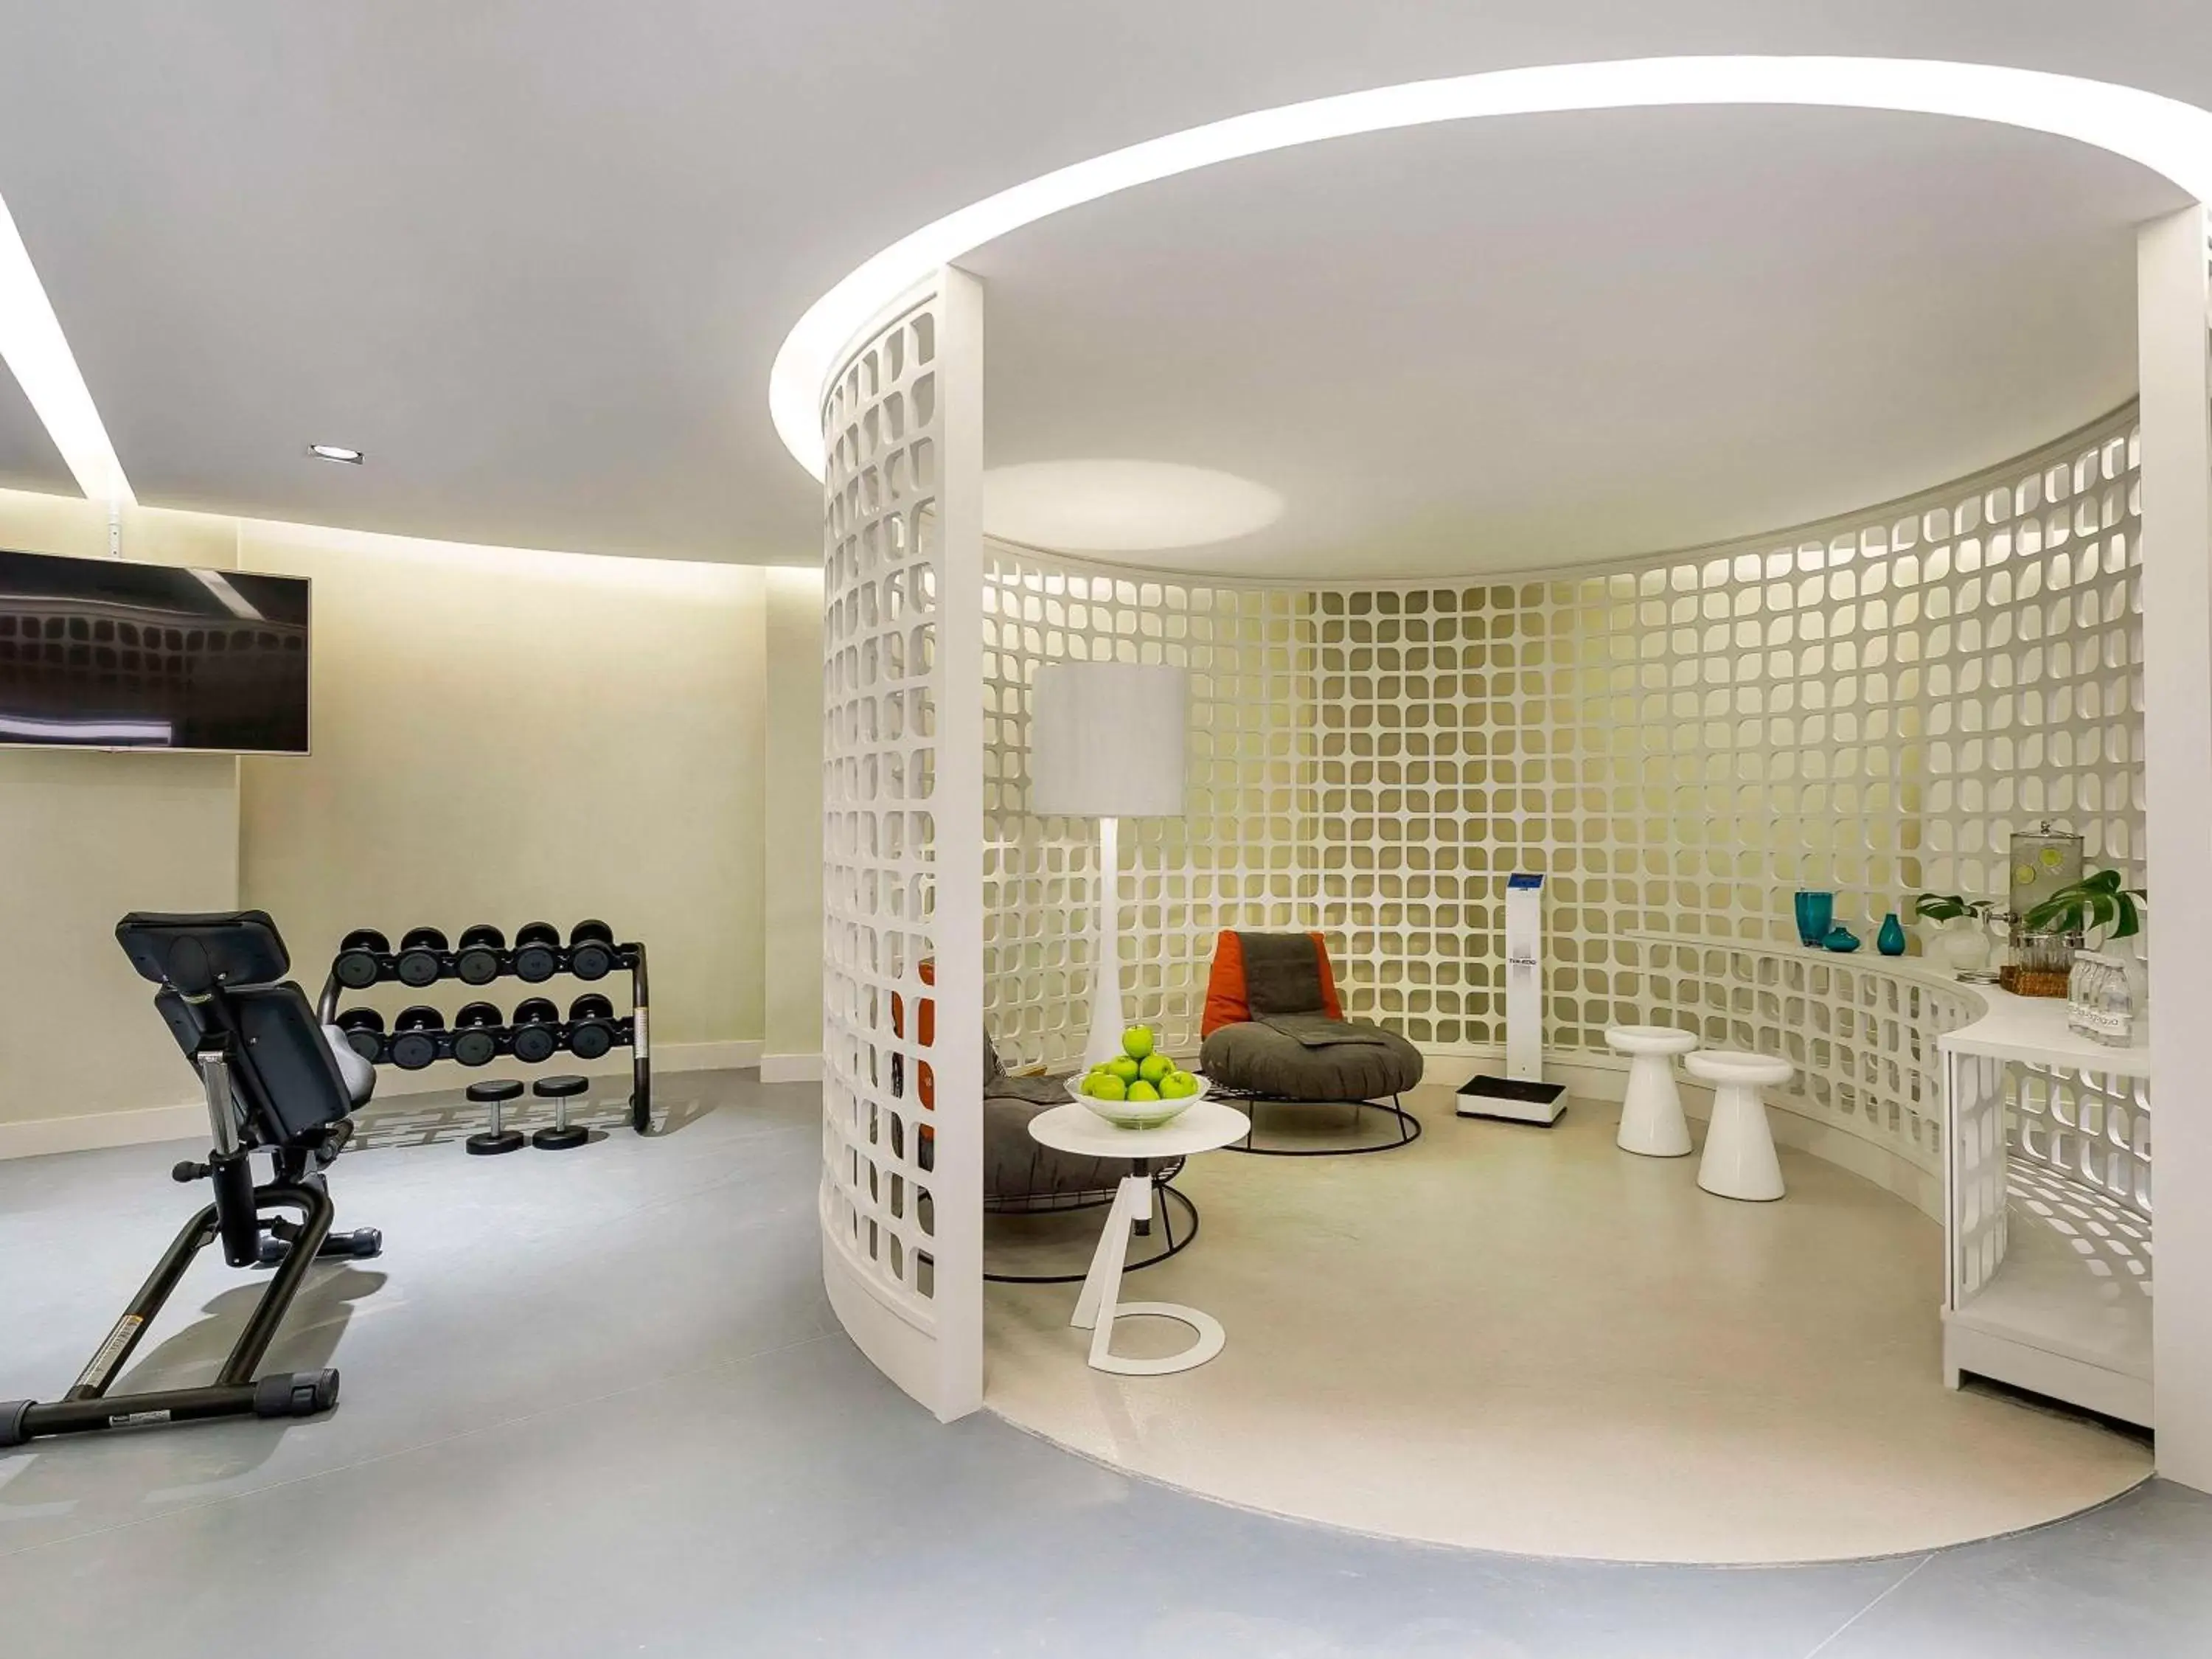 Fitness centre/facilities in Fairmont Rio de Janeiro Copacabana